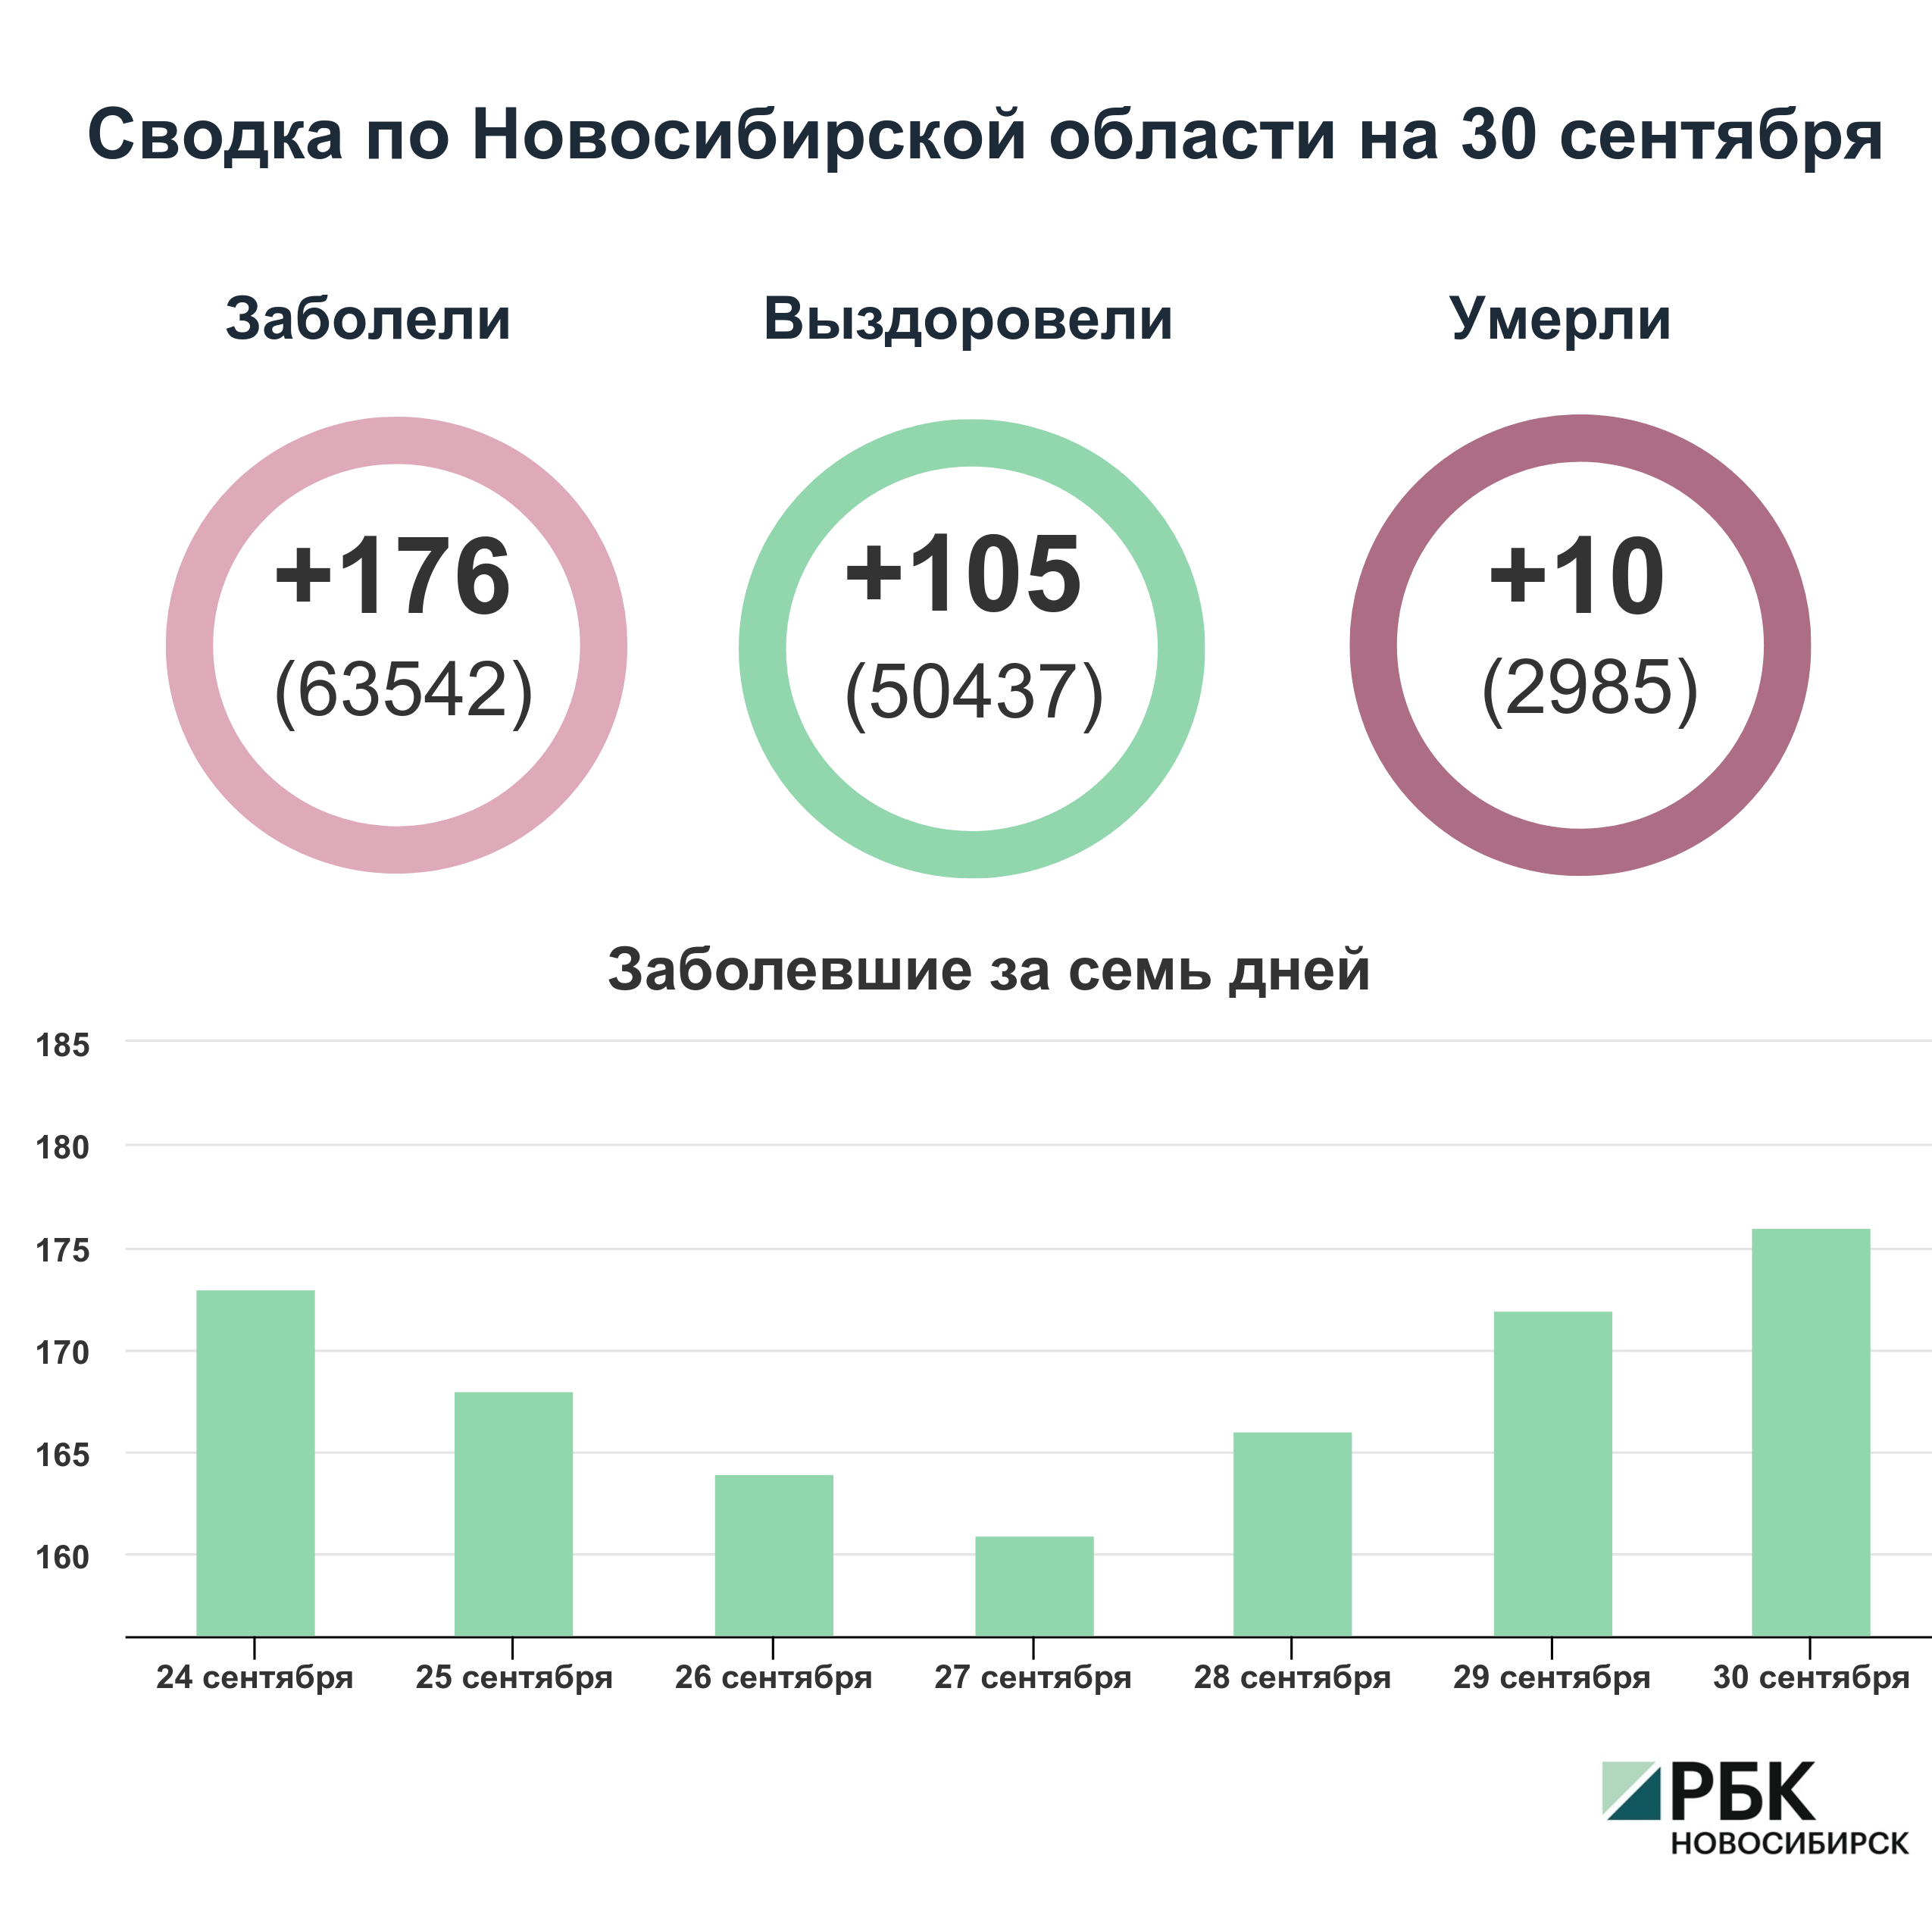 Коронавирус в Новосибирске: сводка на 30 сентября